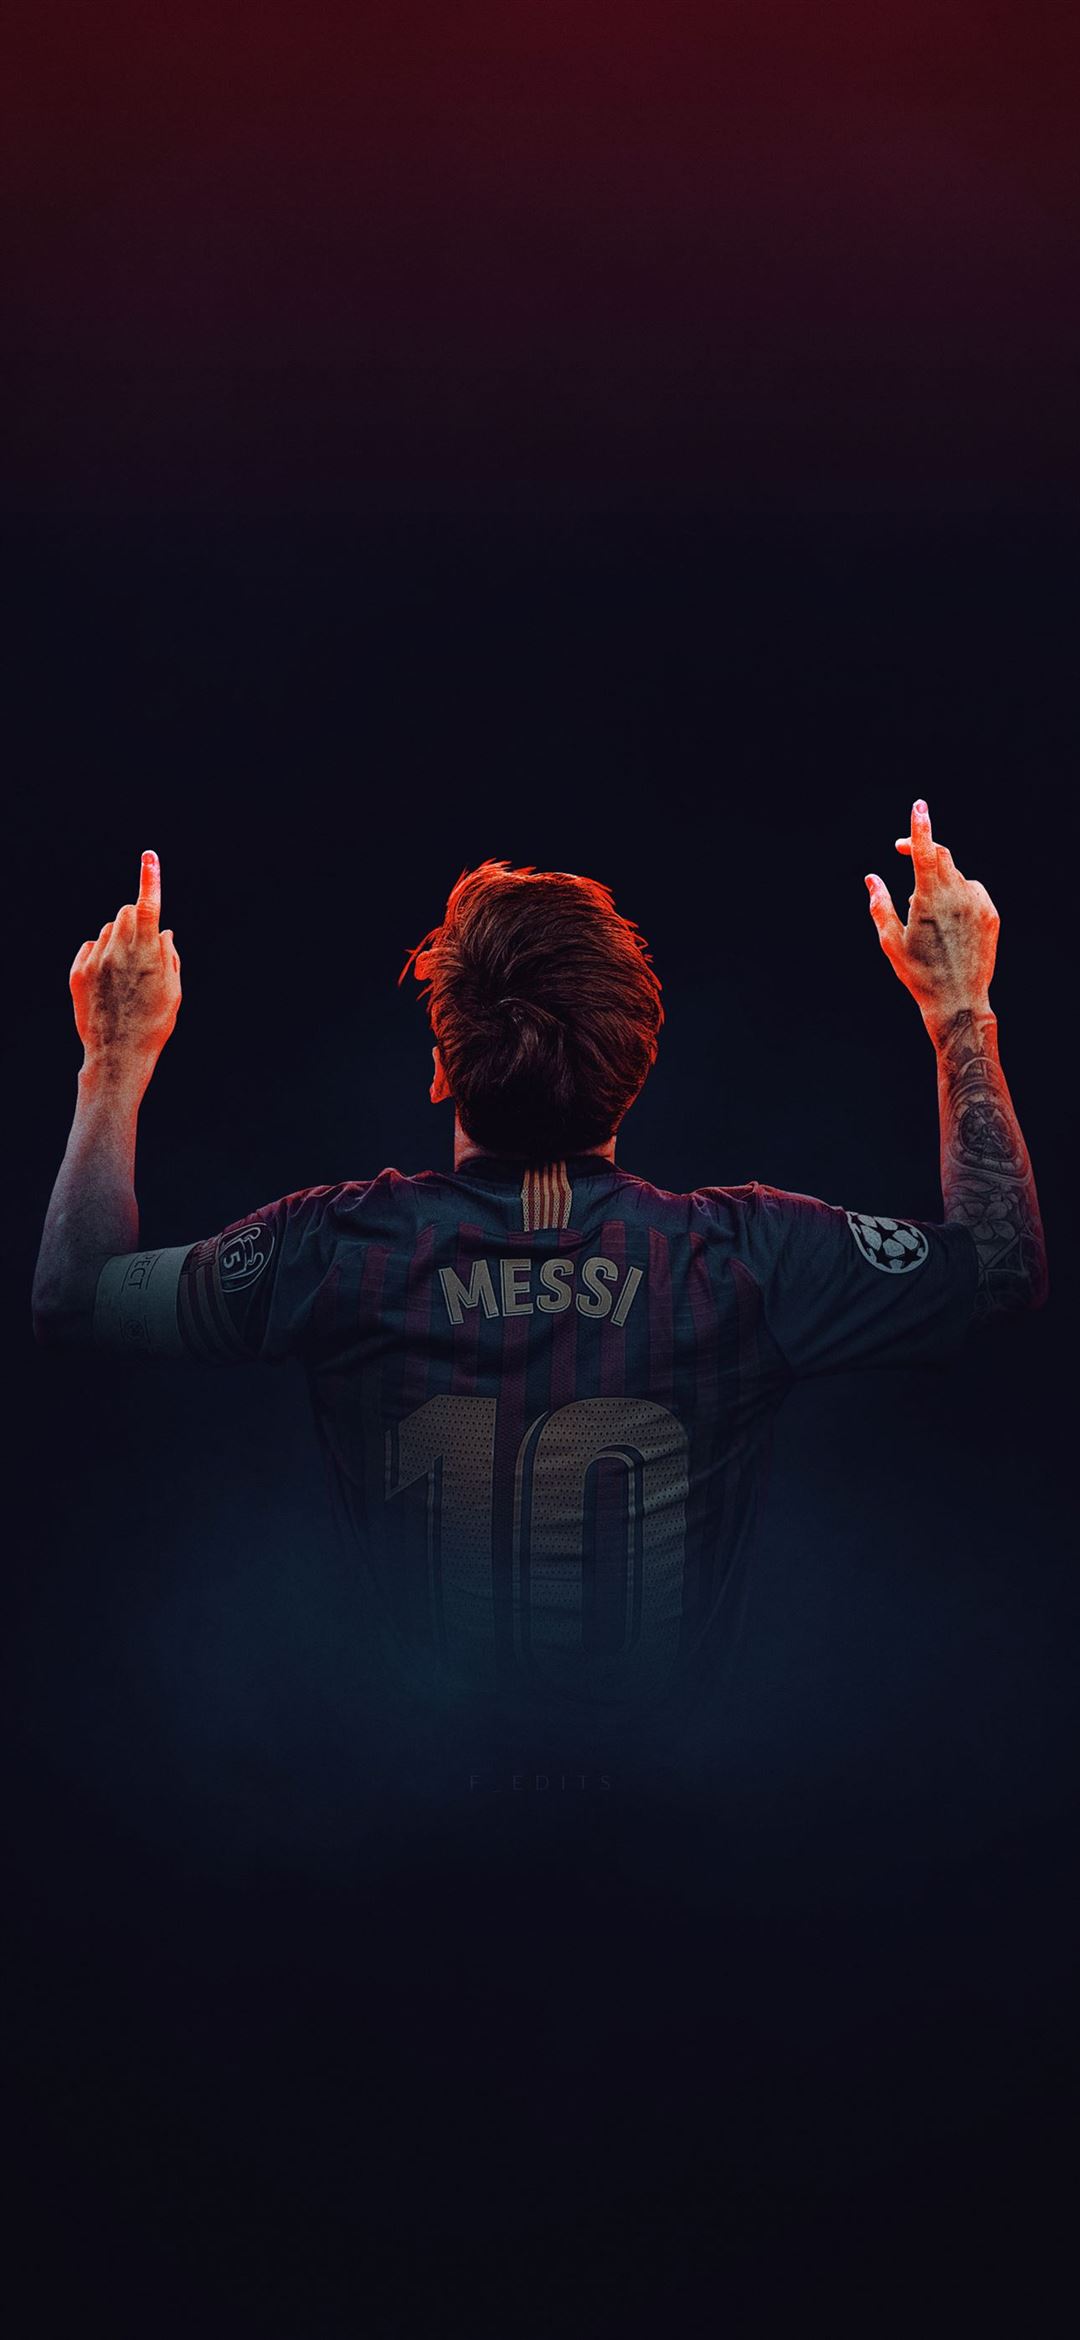 Với Lionel Messi Sports iPhone Wallpaper, bạn sẽ có một bức ảnh đẹp và năng động để tạo động lực cho sự hoạt động thể thao của mình. Hãy bắt đầu một ngày mới với sự năng động và sáng tạo của ngôi sao bóng đá này. Messi không chỉ là một cầu thủ bóng đá xuất sắc, mà còn là một biểu tượng của sự năng động và sáng tạo.